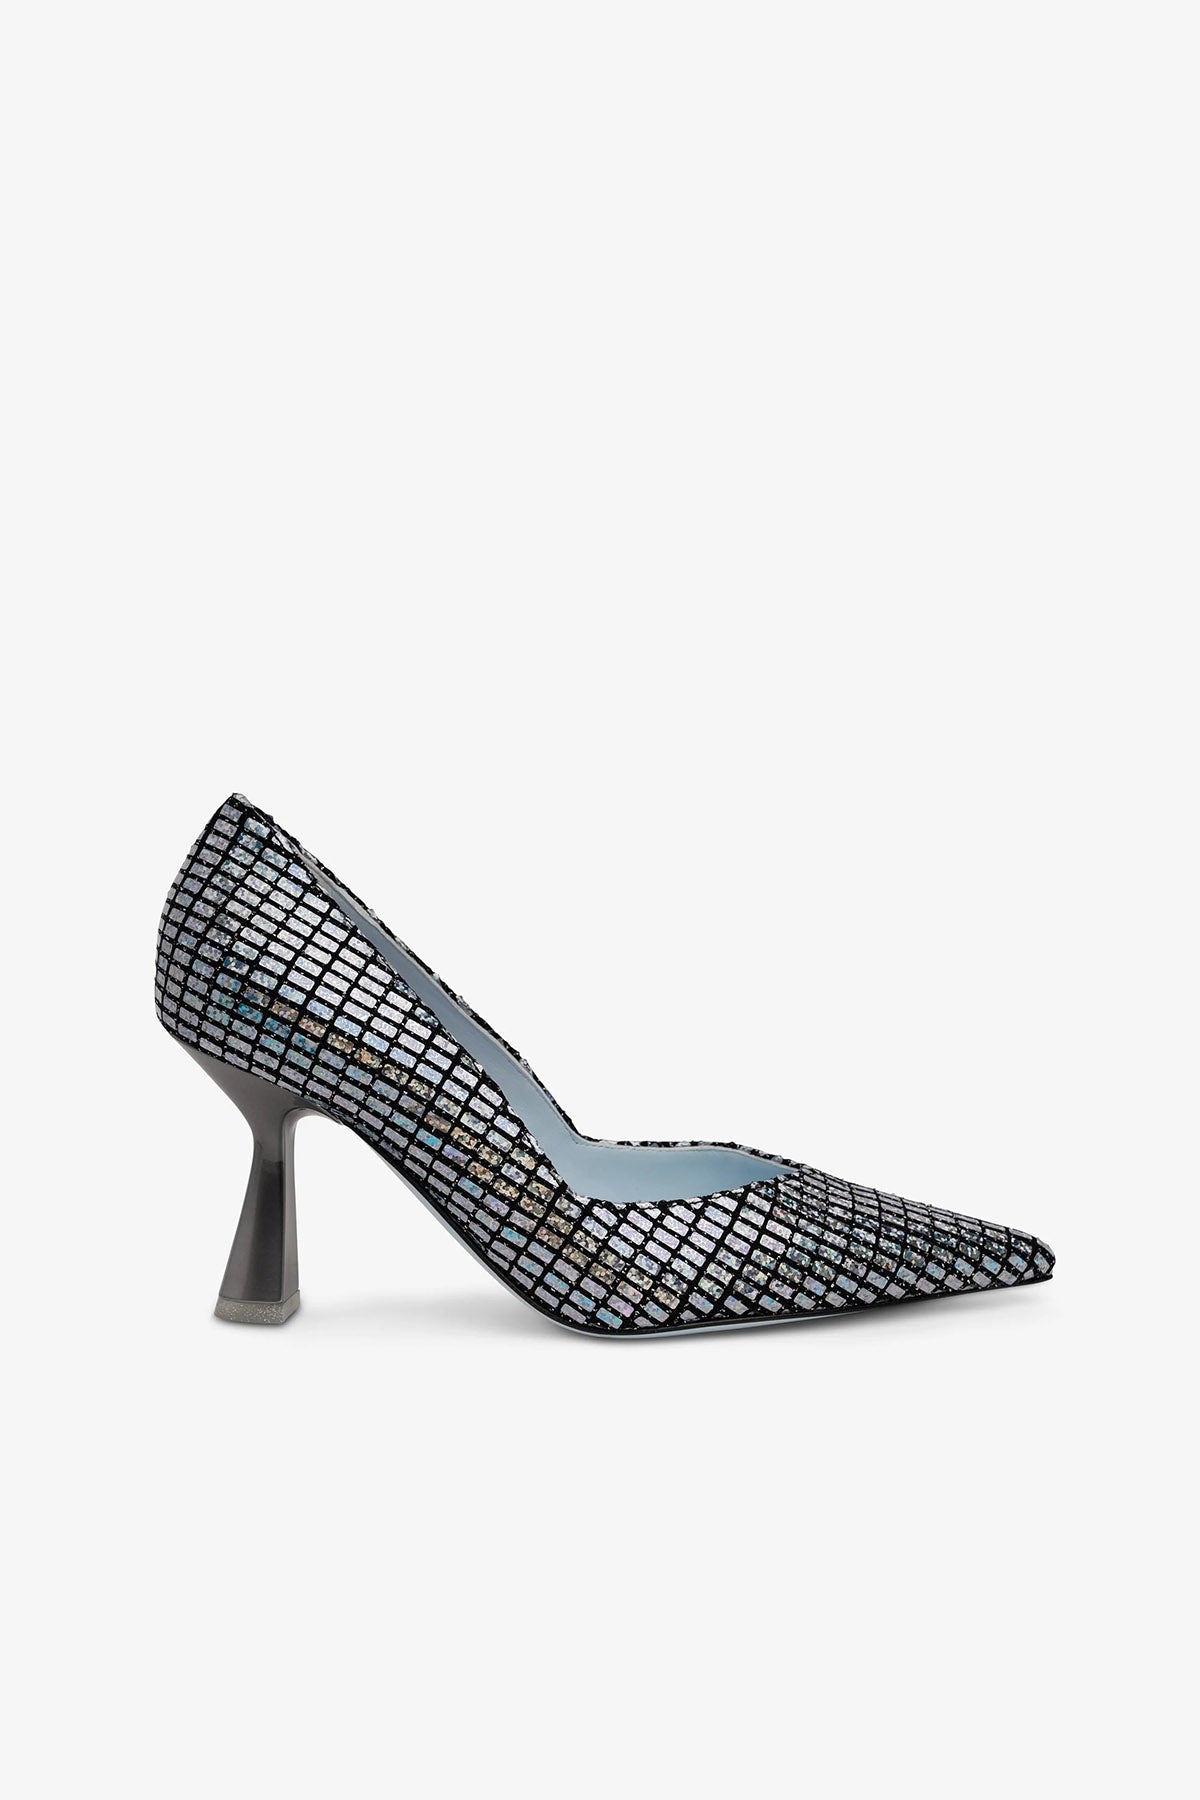 Chiara Ferragni Metalik Stiletto Ayakkabı